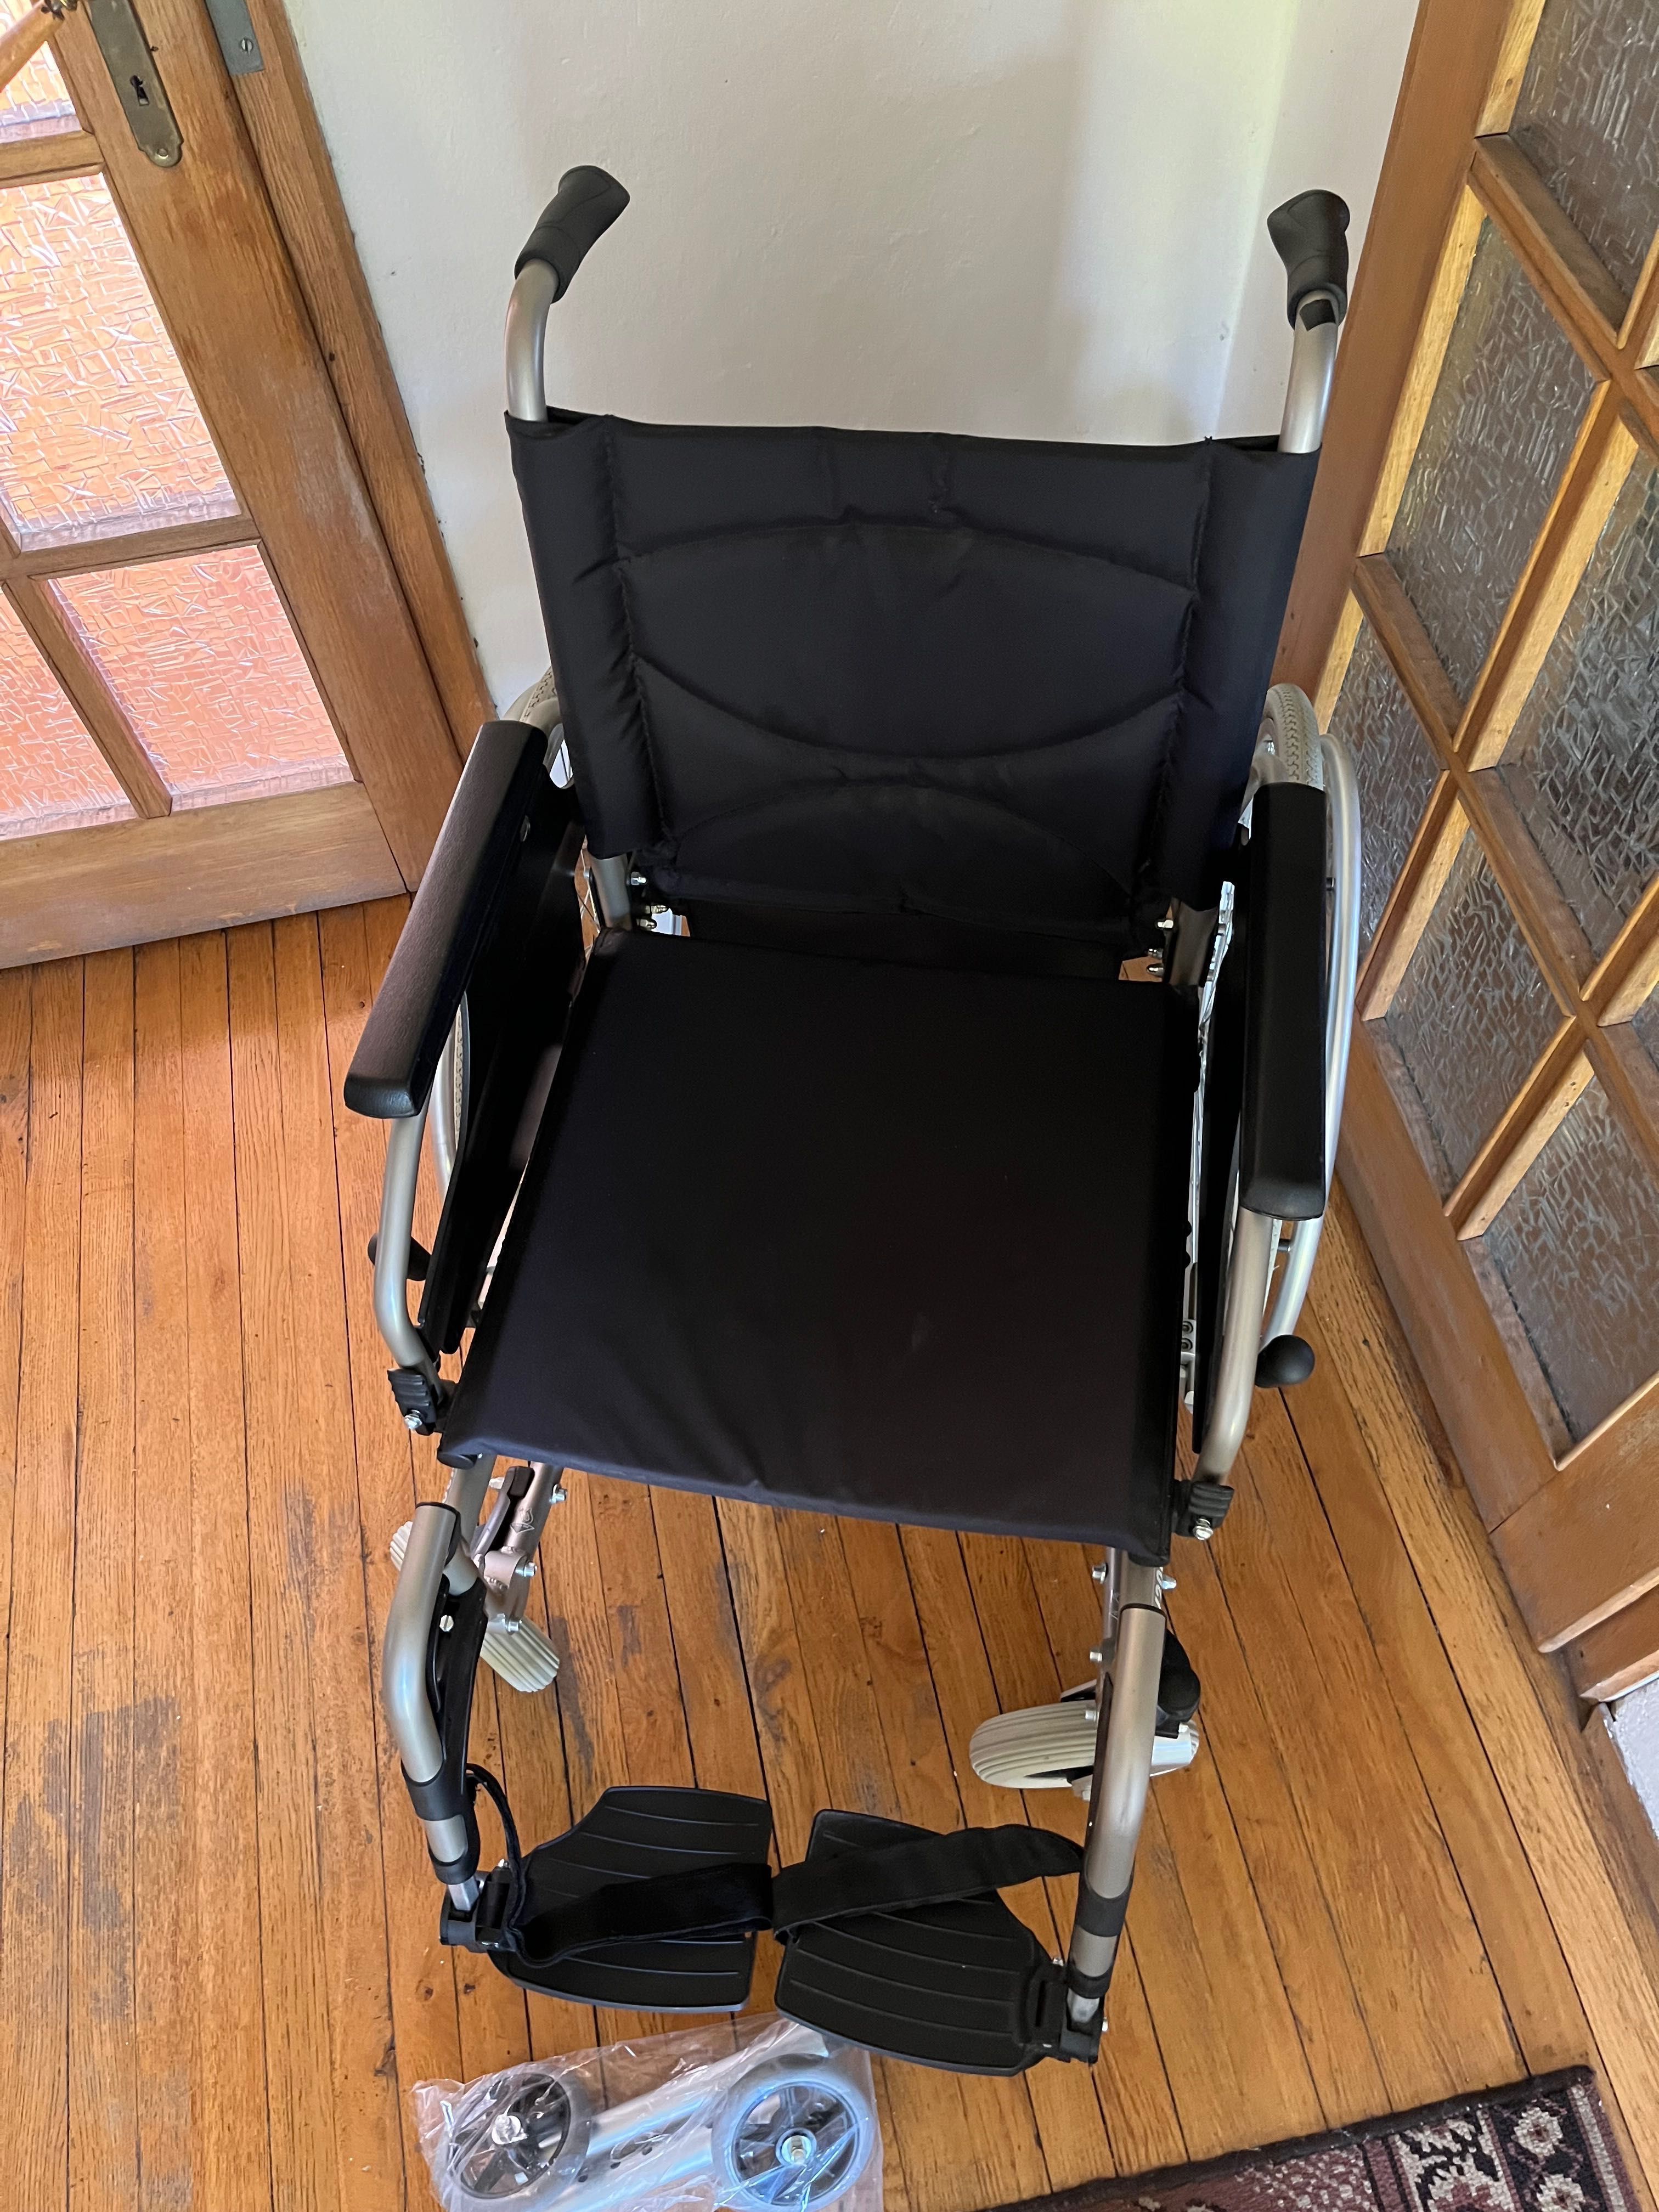 Wózek inwalidzki Vermeiren V200